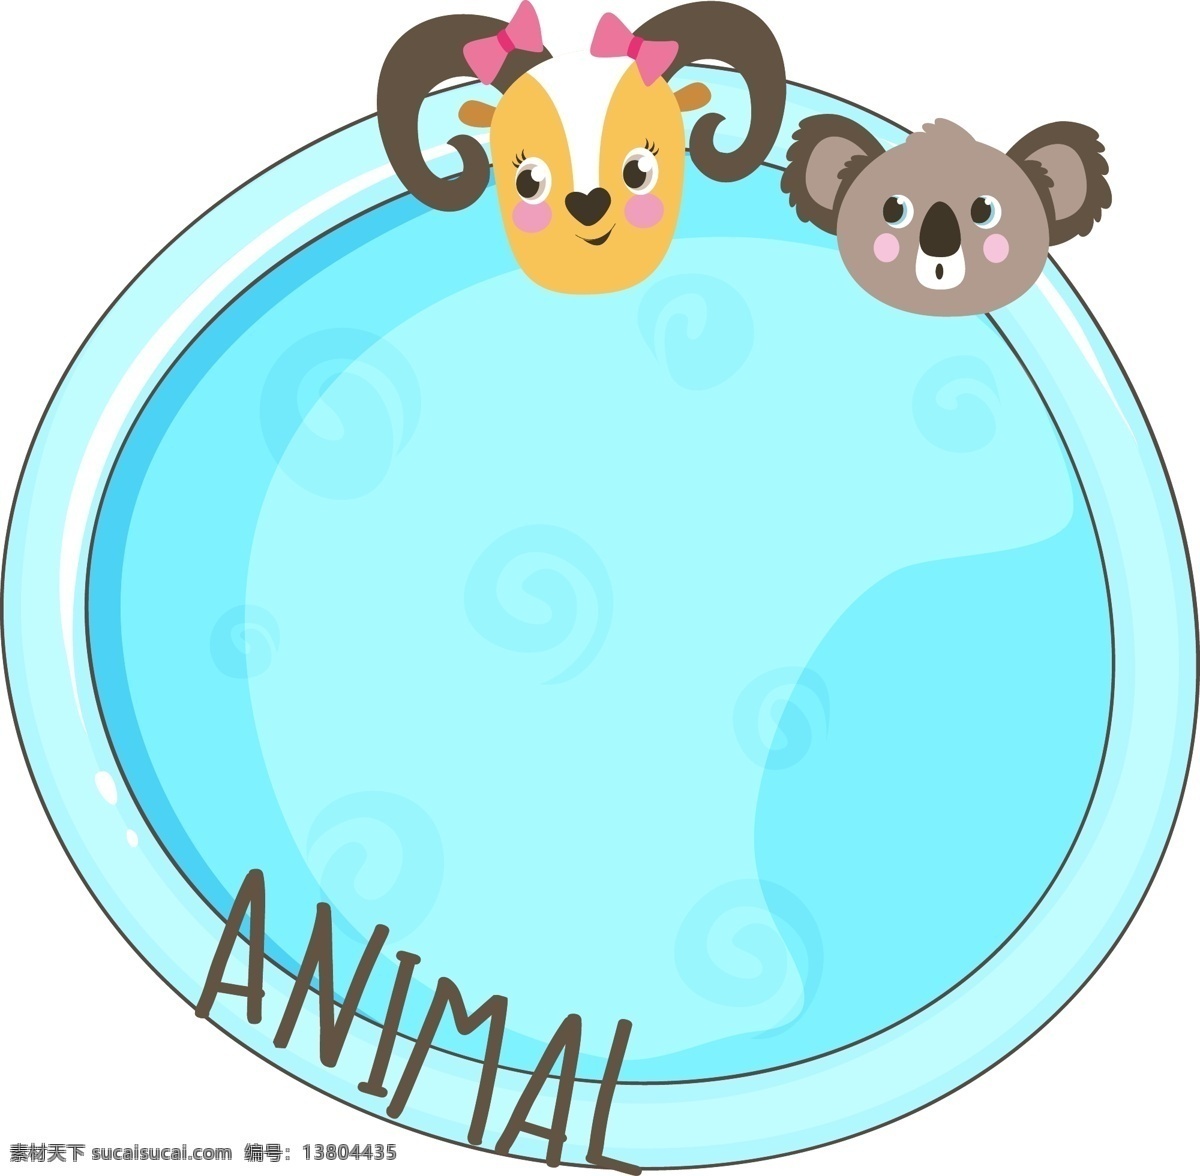 蓝色 动物 图案 边框 元素 动物图案 卡通 可爱 标题框 卡通边框 时尚边框 动物边框 清新边框 可爱边框 手绘线框 彩色边框 可爱小动物